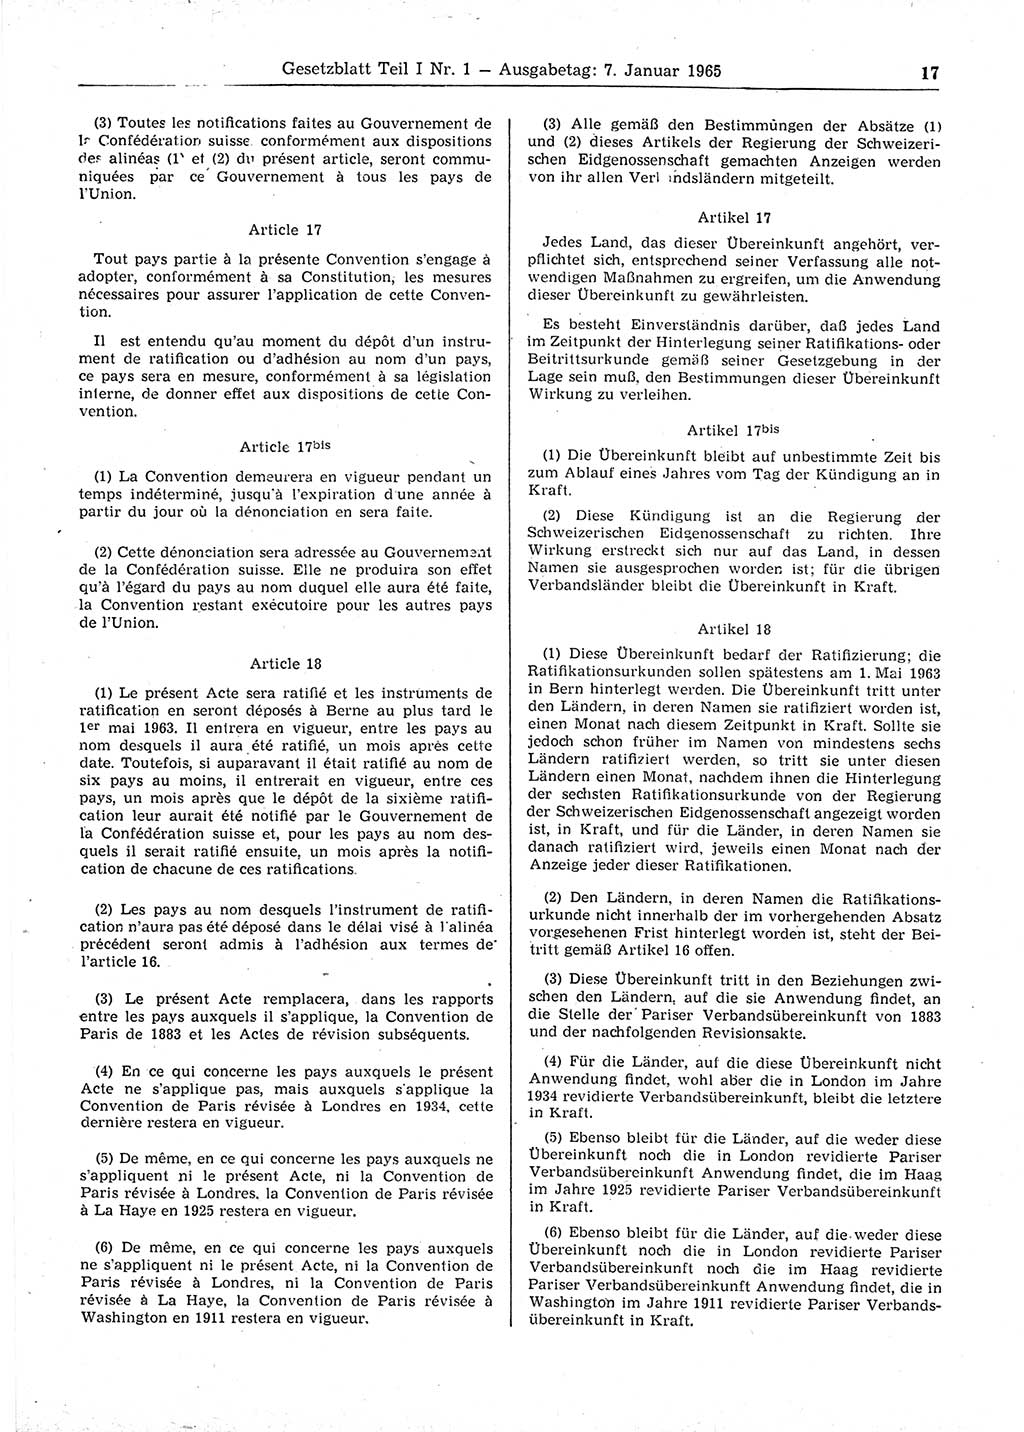 Gesetzblatt (GBl.) der Deutschen Demokratischen Republik (DDR) Teil Ⅰ 1965, Seite 17 (GBl. DDR Ⅰ 1965, S. 17)